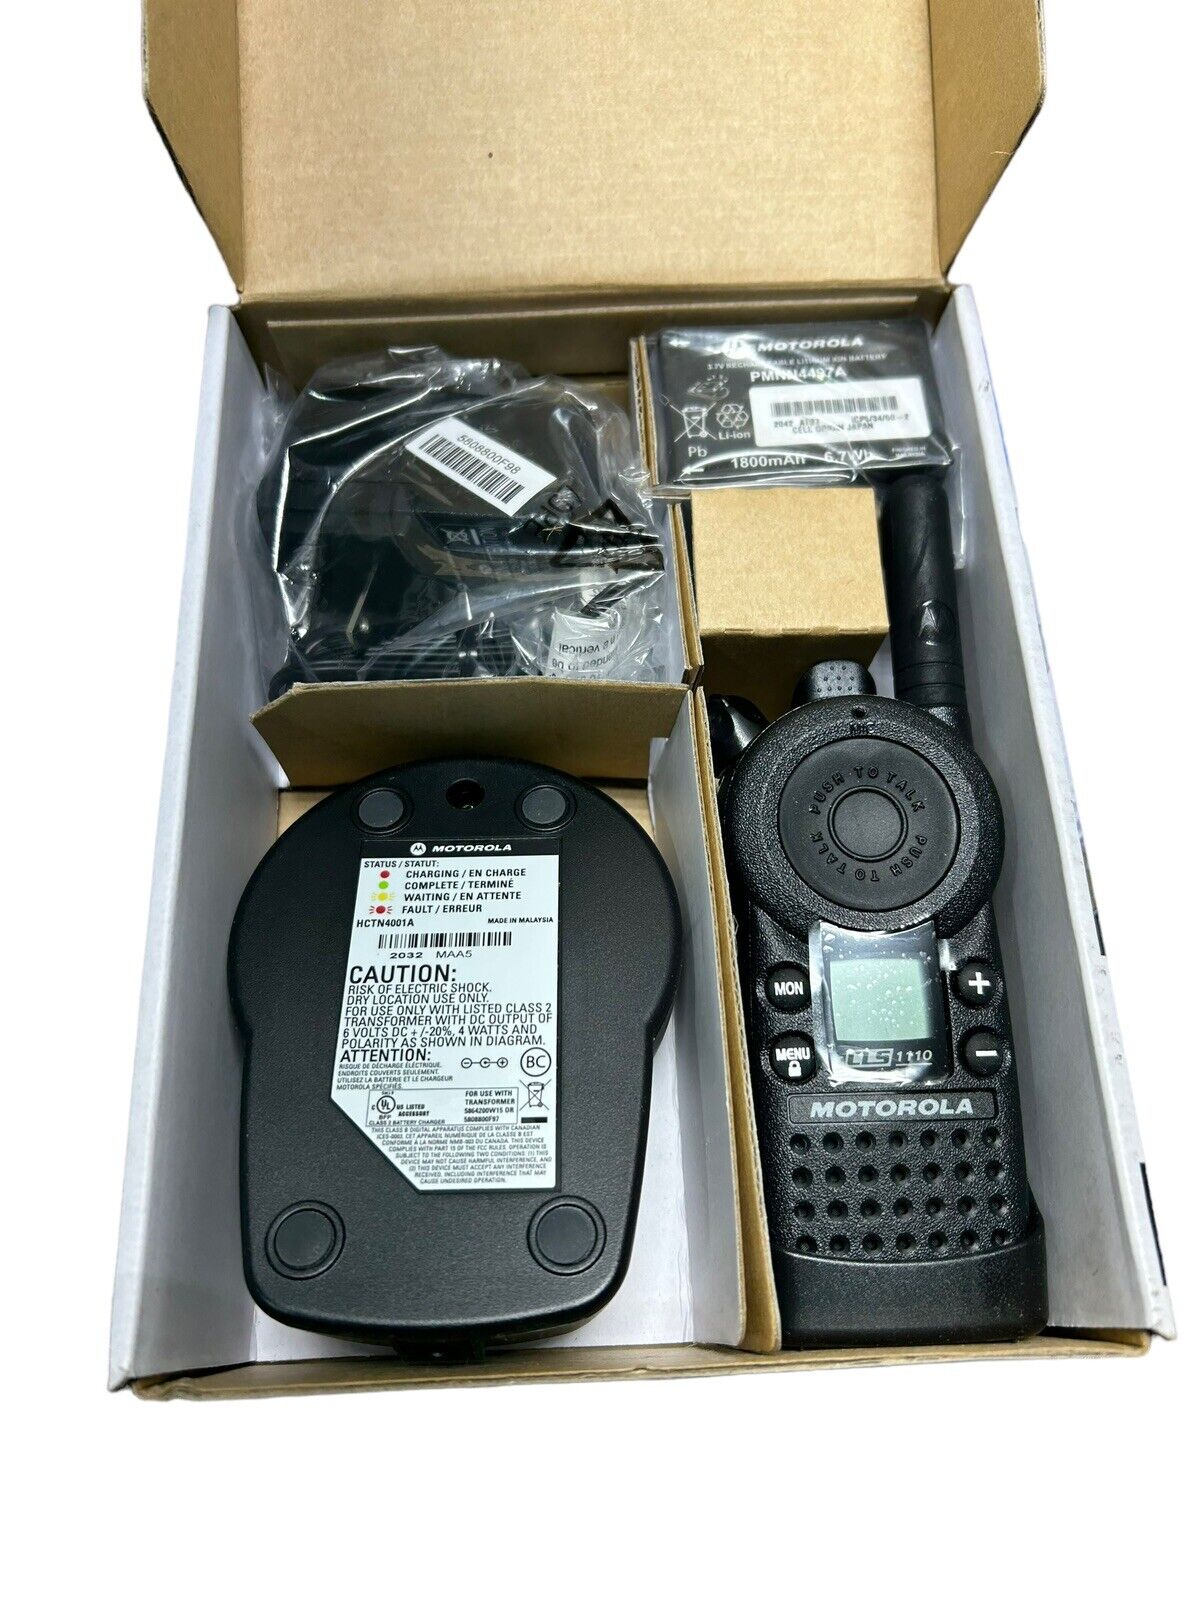 Pack of Motorola CLS1110 Walkie Talkie Radios with Headsets - 3